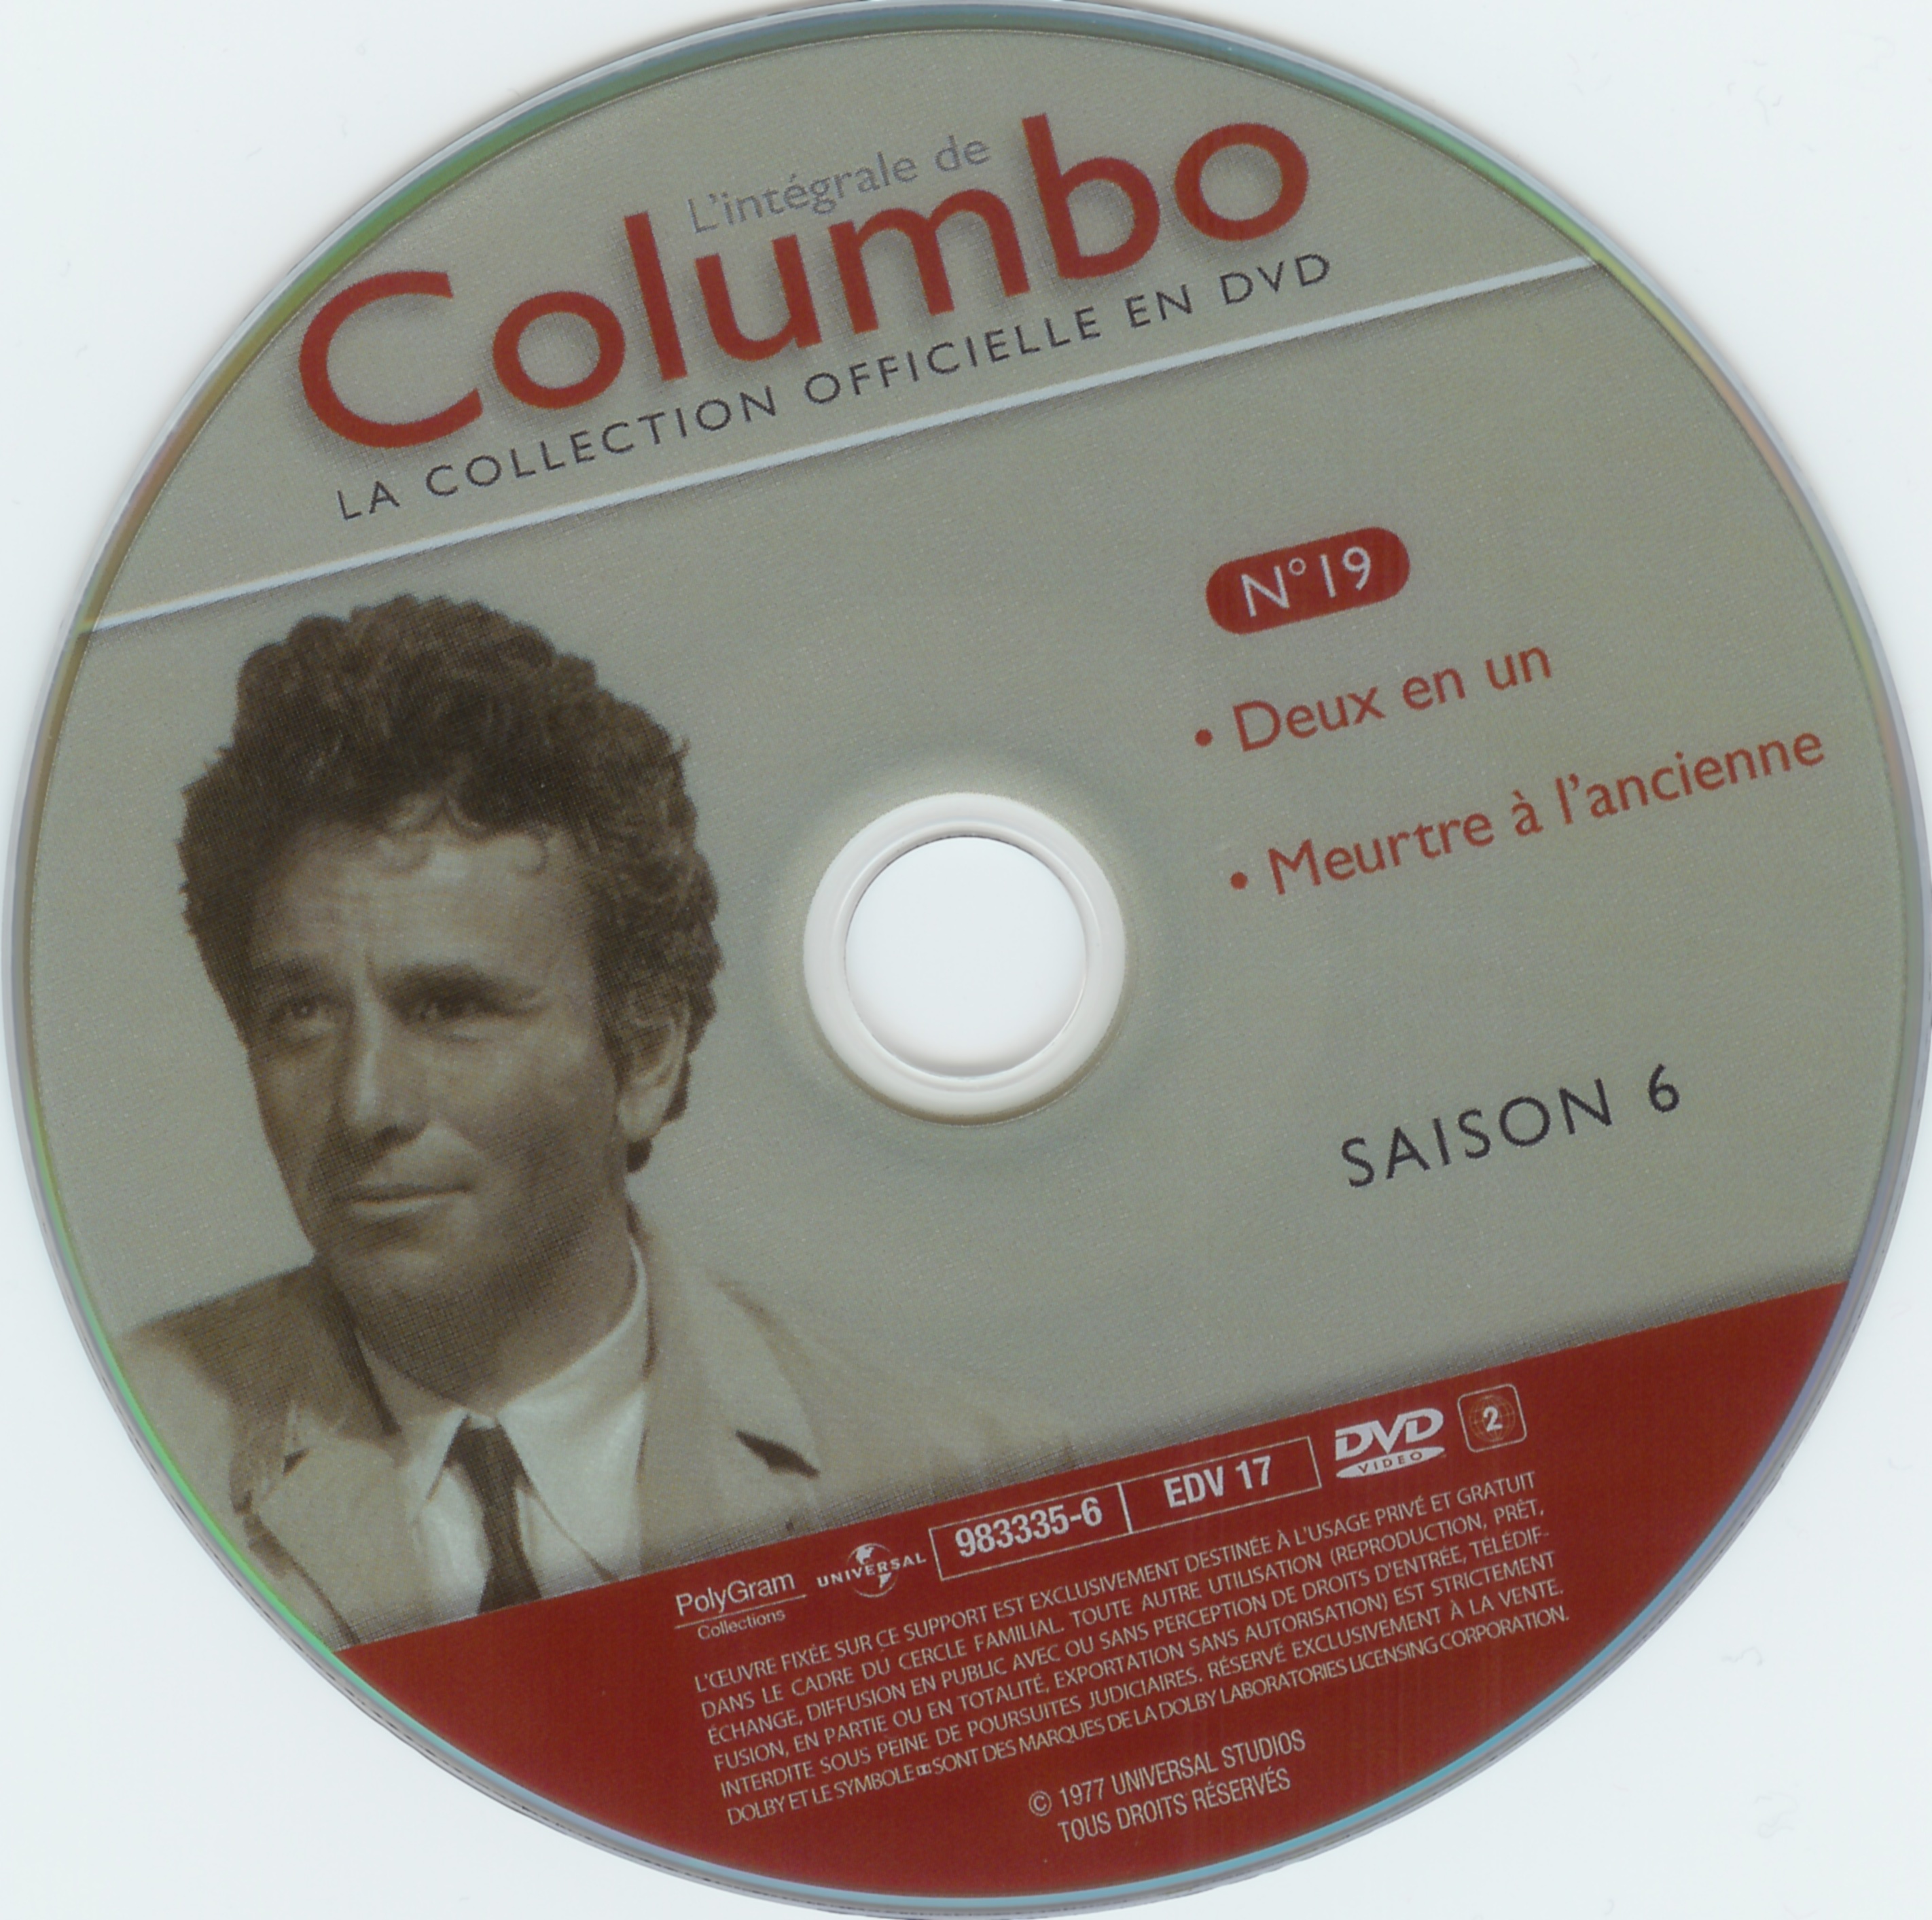 Columbo saison 6 vol 19